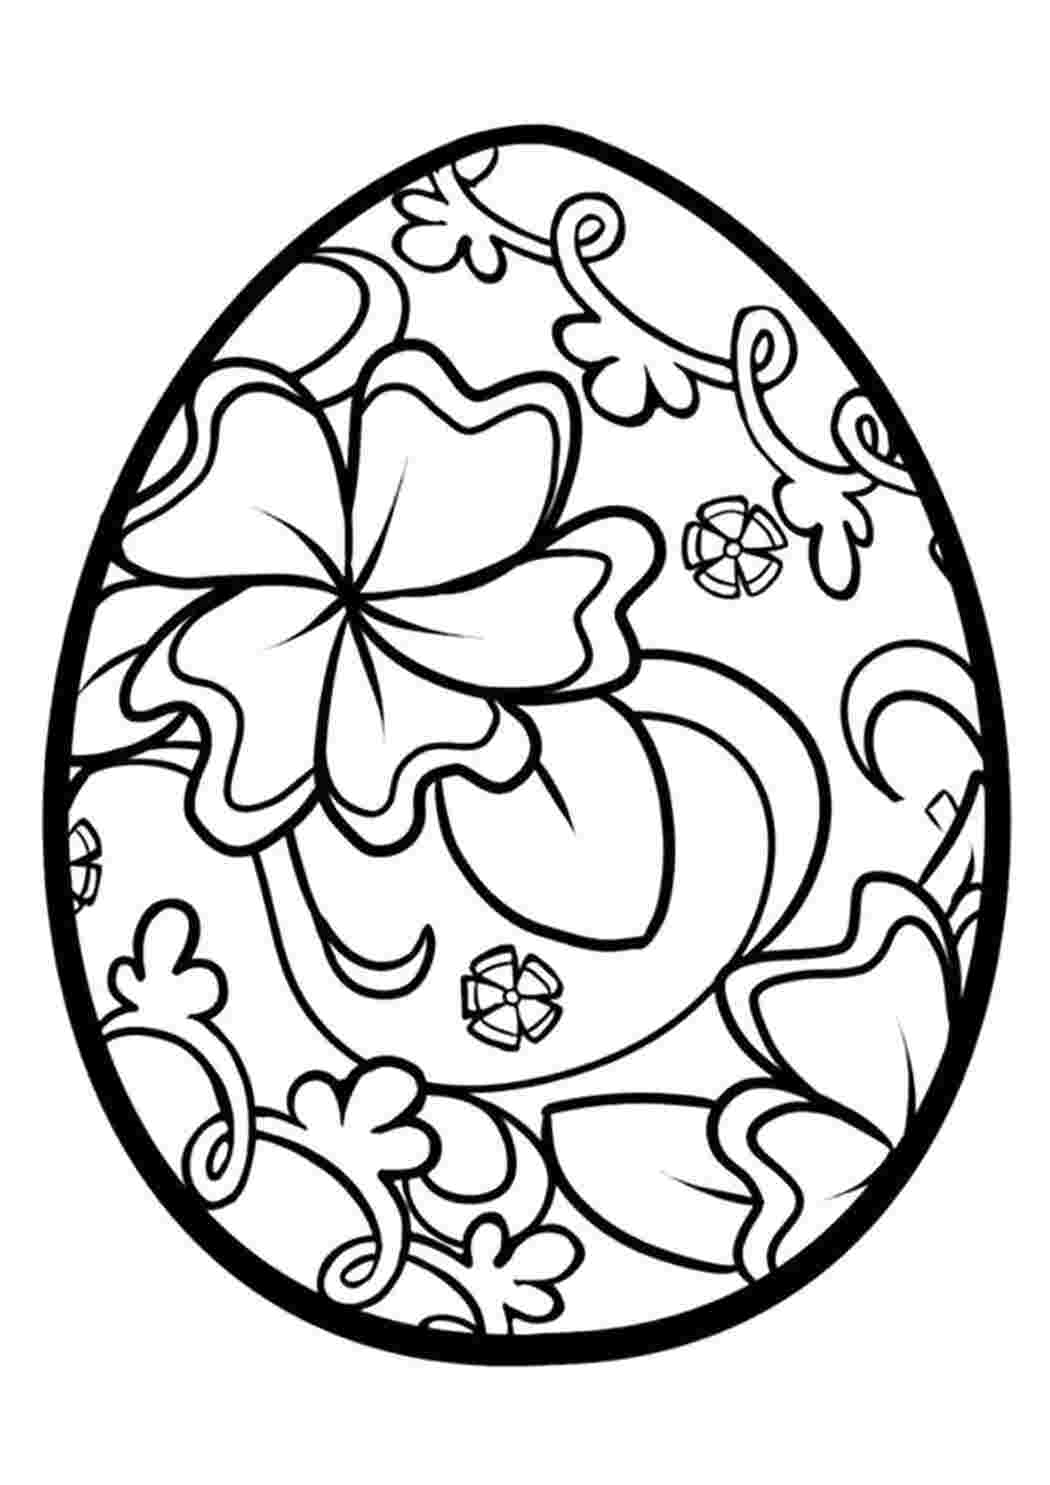 Распечатать раскраски к празднику Пасхи с пасхальными яйцами